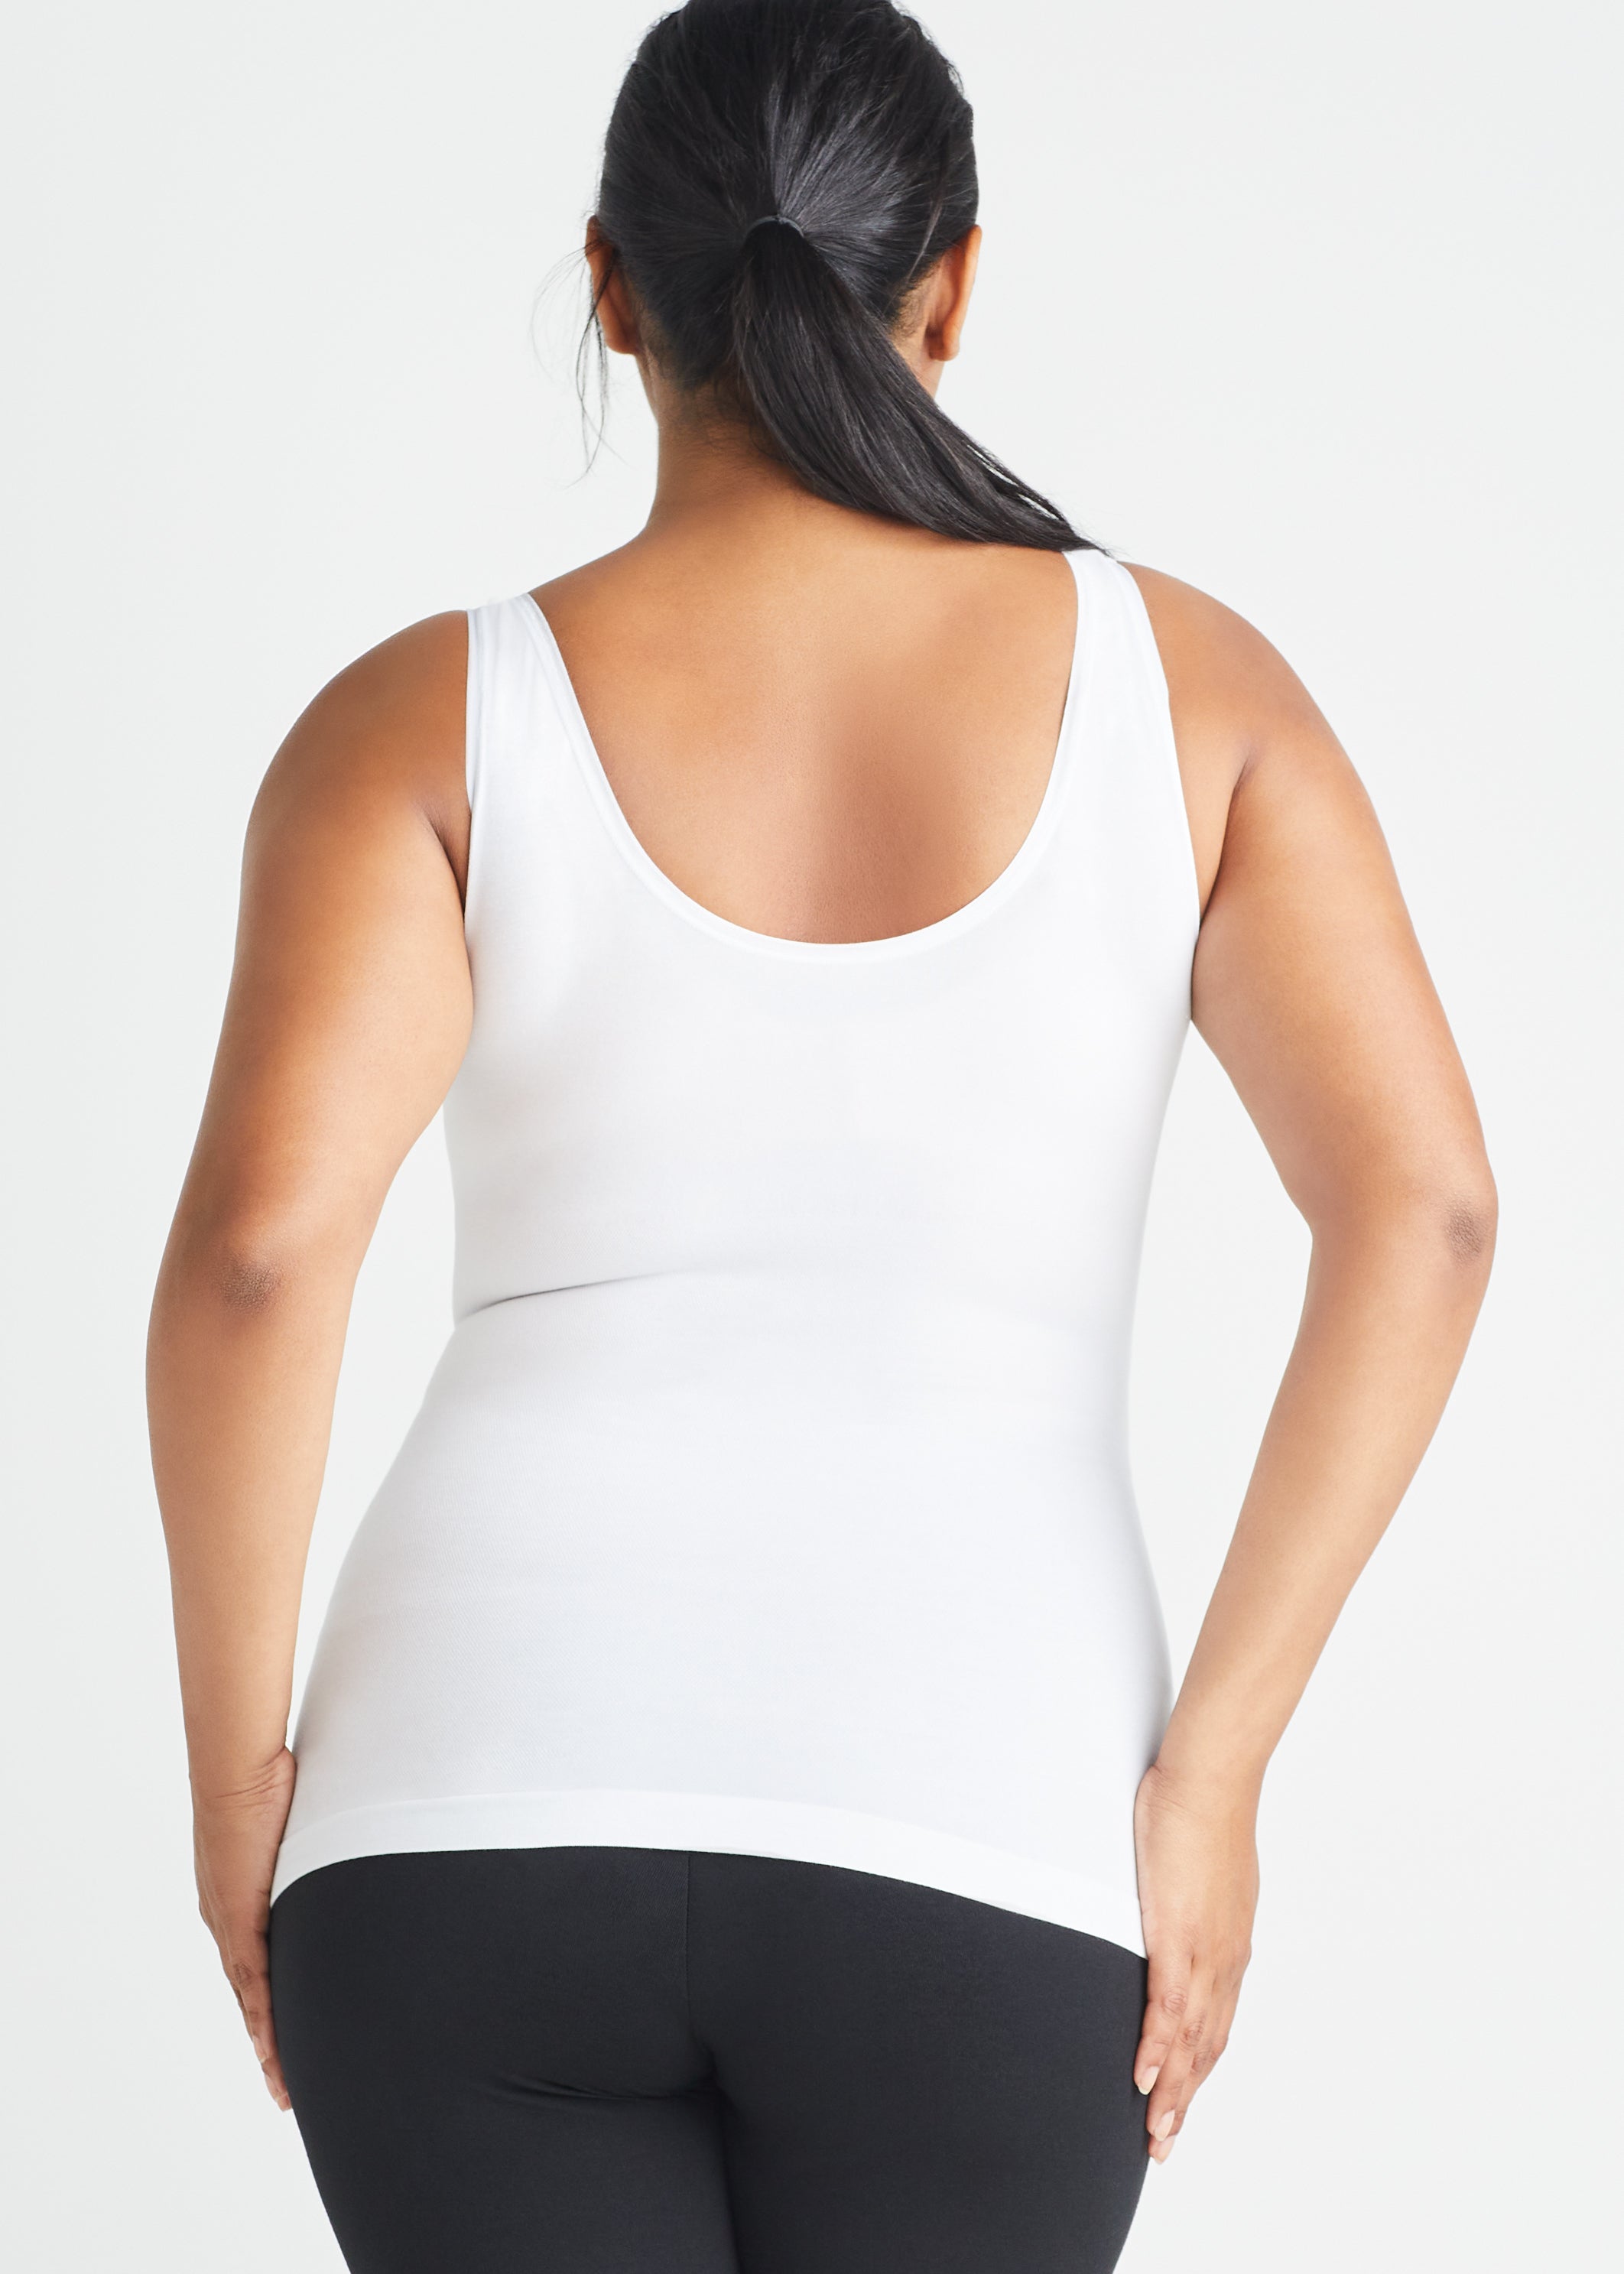 Yummie Women's Seamless Reversible Shapewear Tank top, White, L/XL